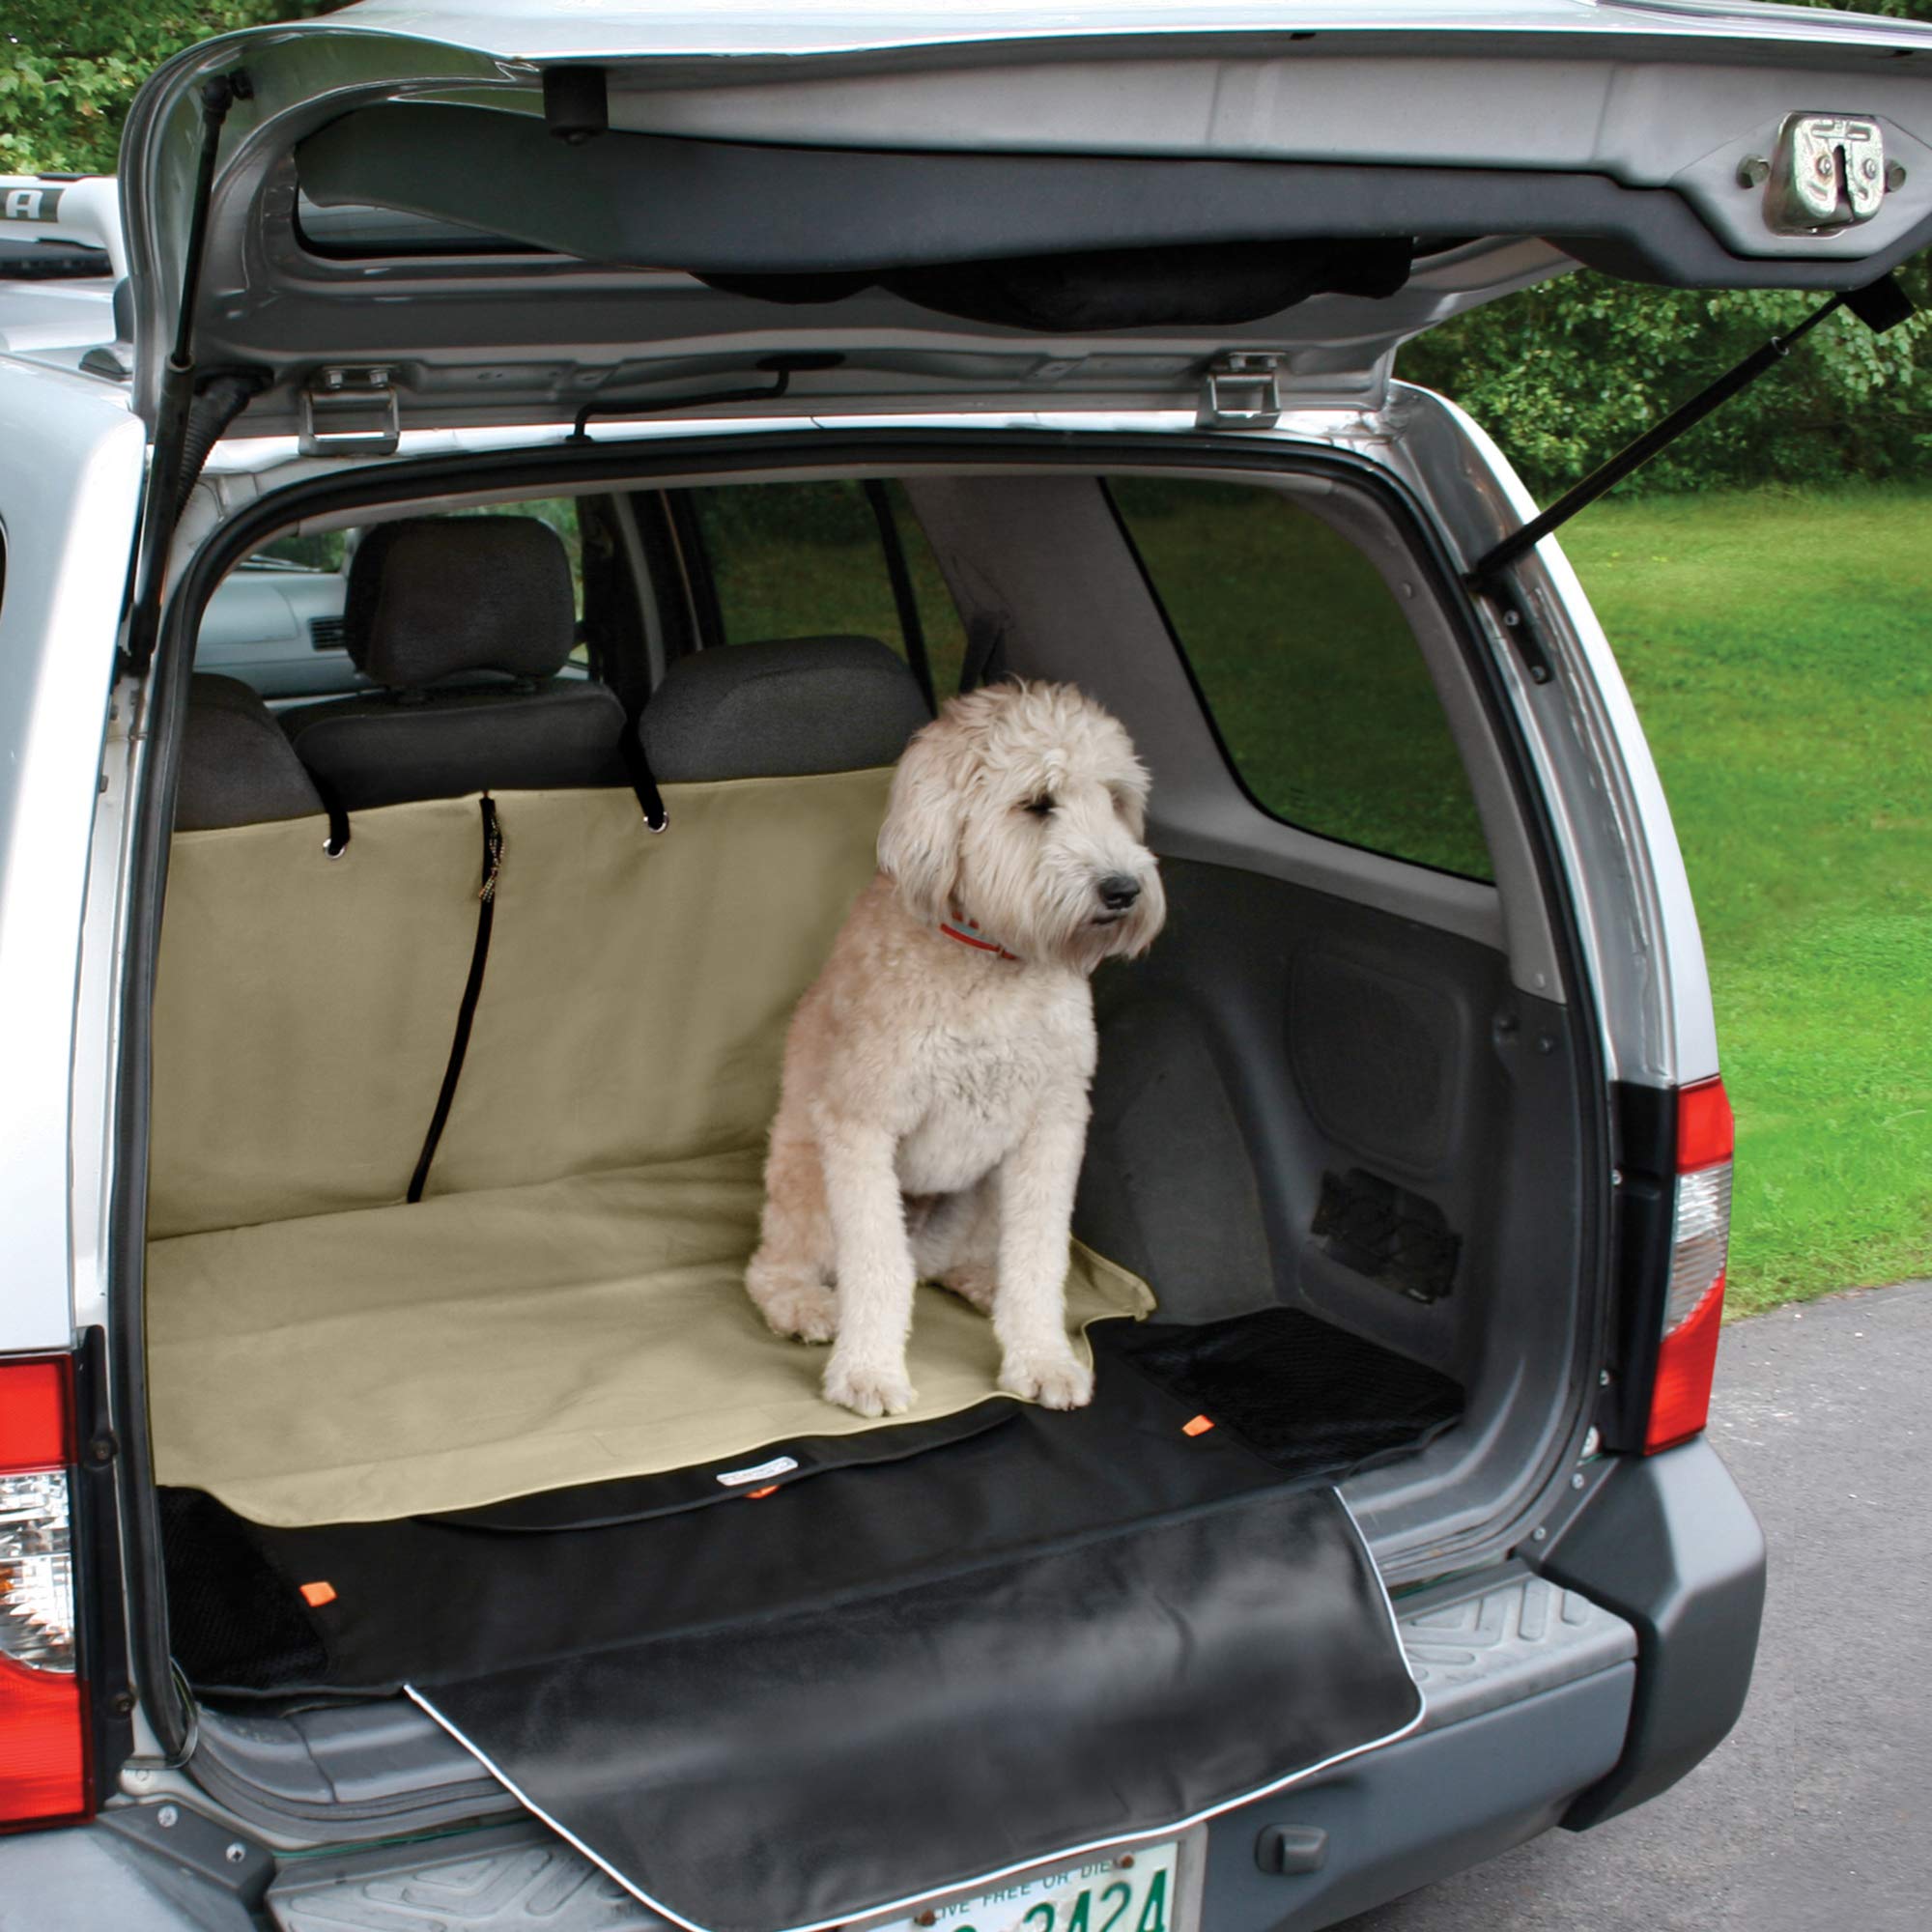 Kurgo Kofferraumbezug für Hunde, Wasserfest und Schmutzabweisend, Für die meisten Autos geeignet, 132 cm x 157 cm, Sandfarben